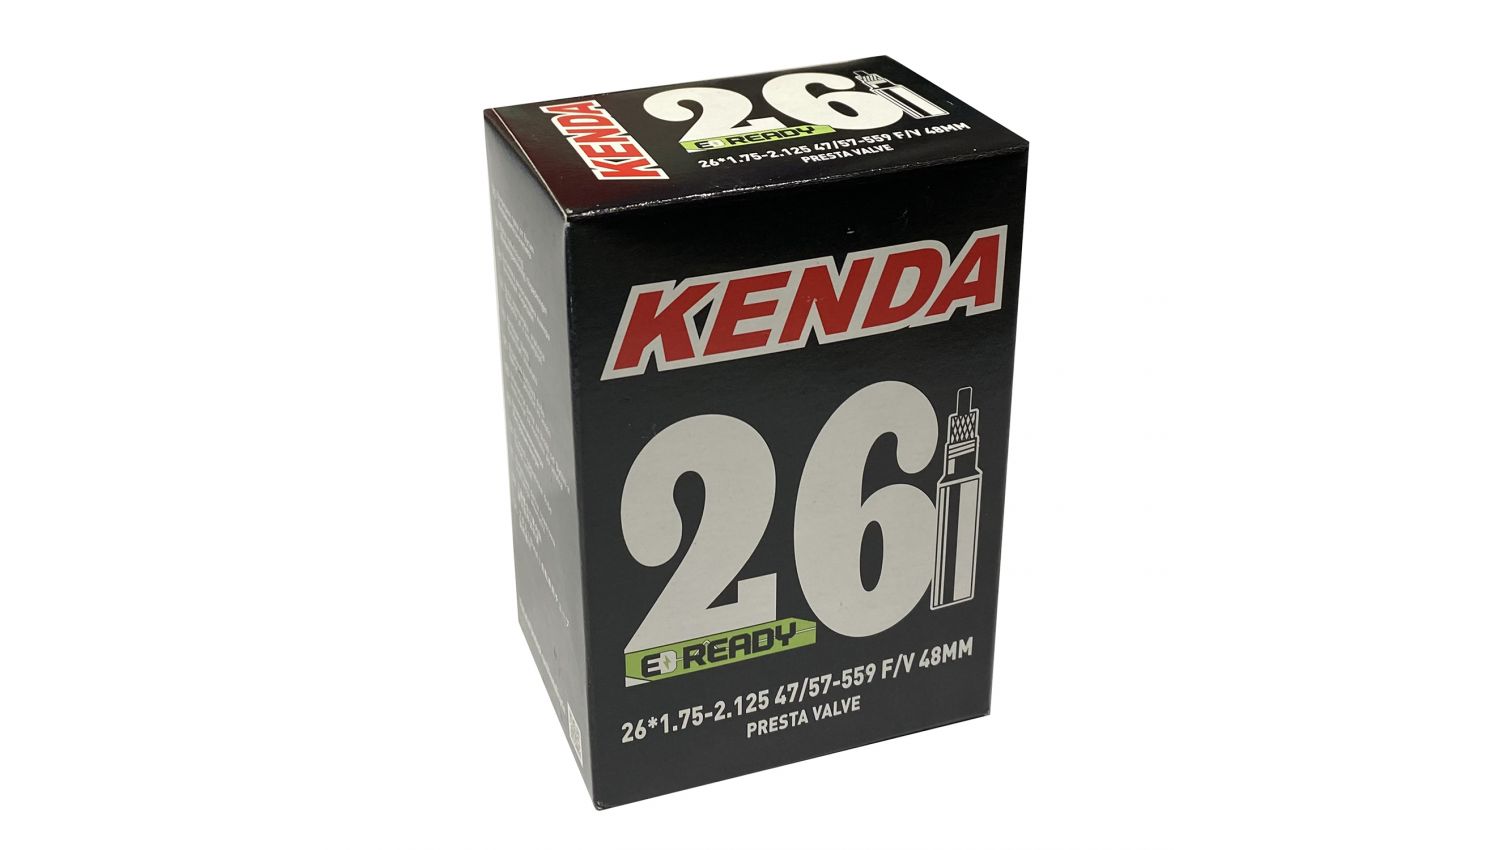 Фотографія Камера KENDA 26x1.75-2.125, F/V-48 мм, 47/57-559, у коробці